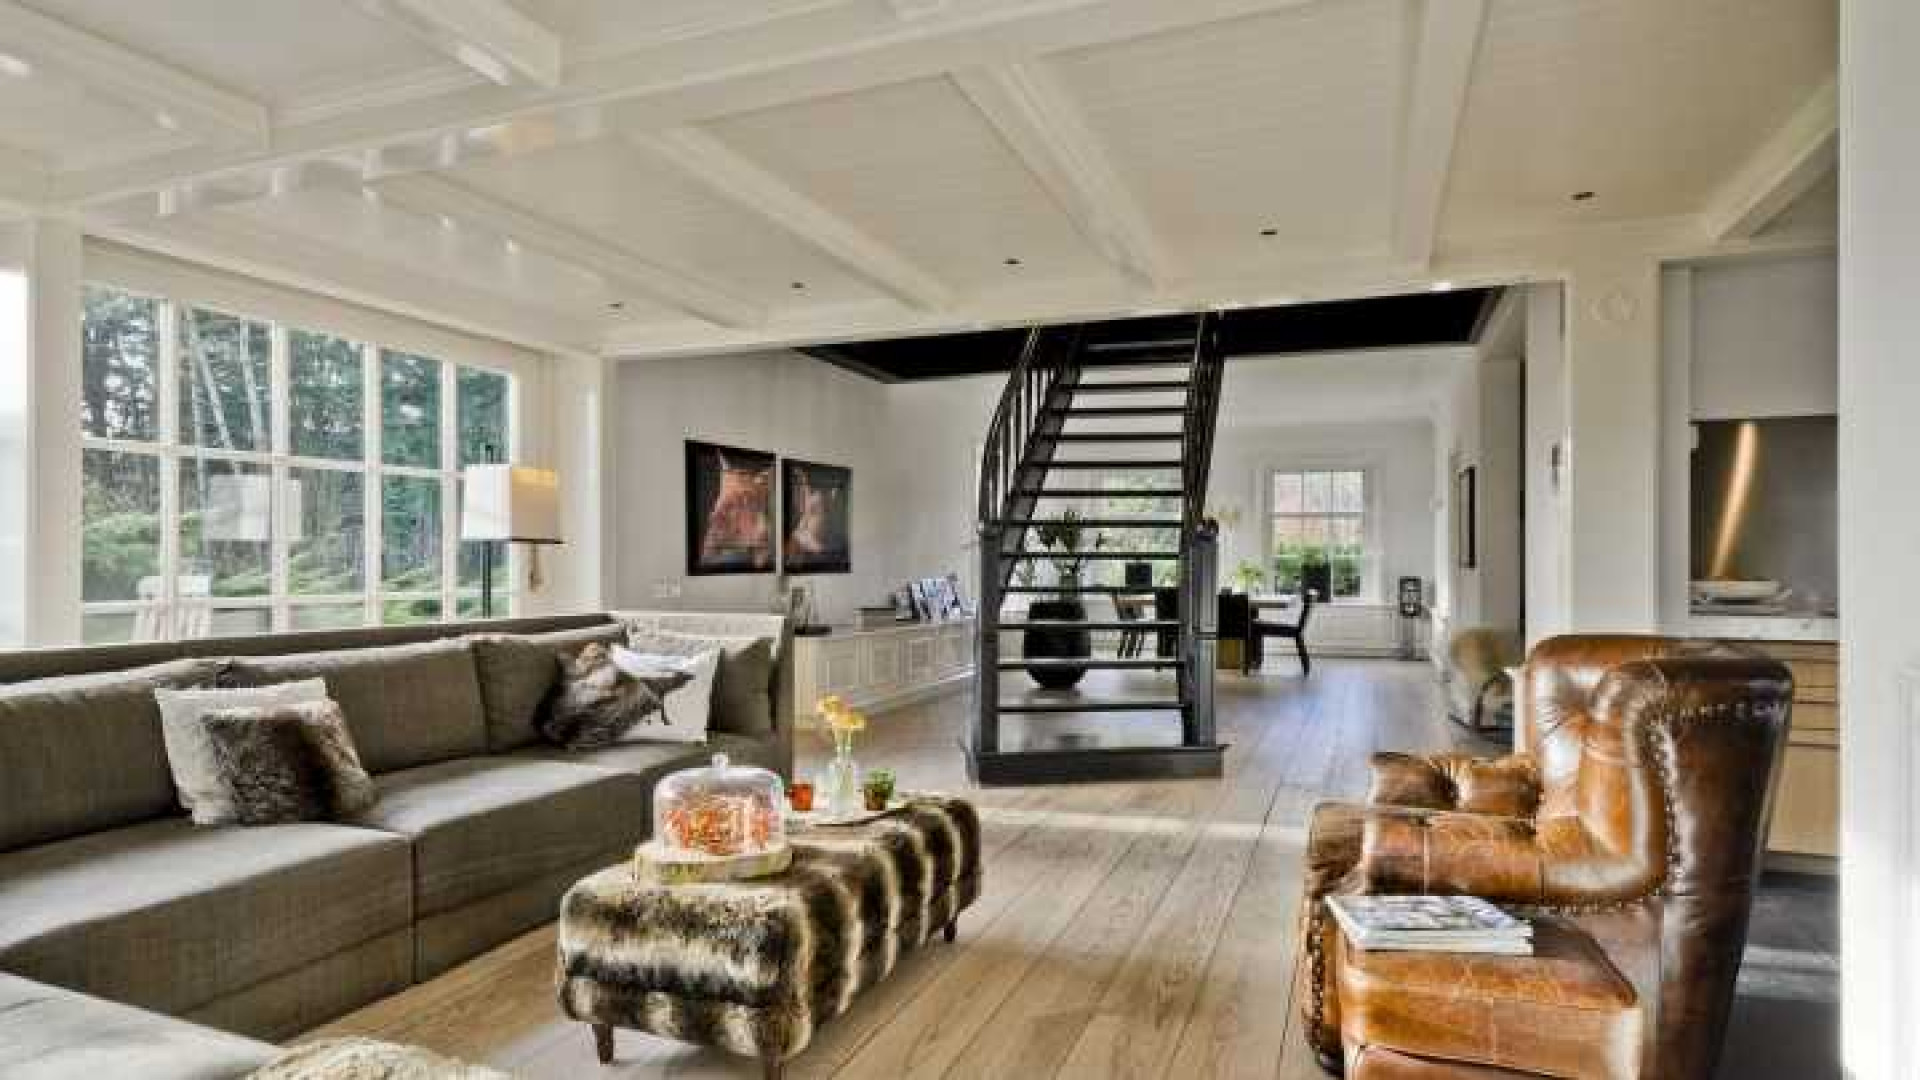 Henny Huisman verkoopt zijn villa zwaar onder de vraagprijs. Zie foto's 4